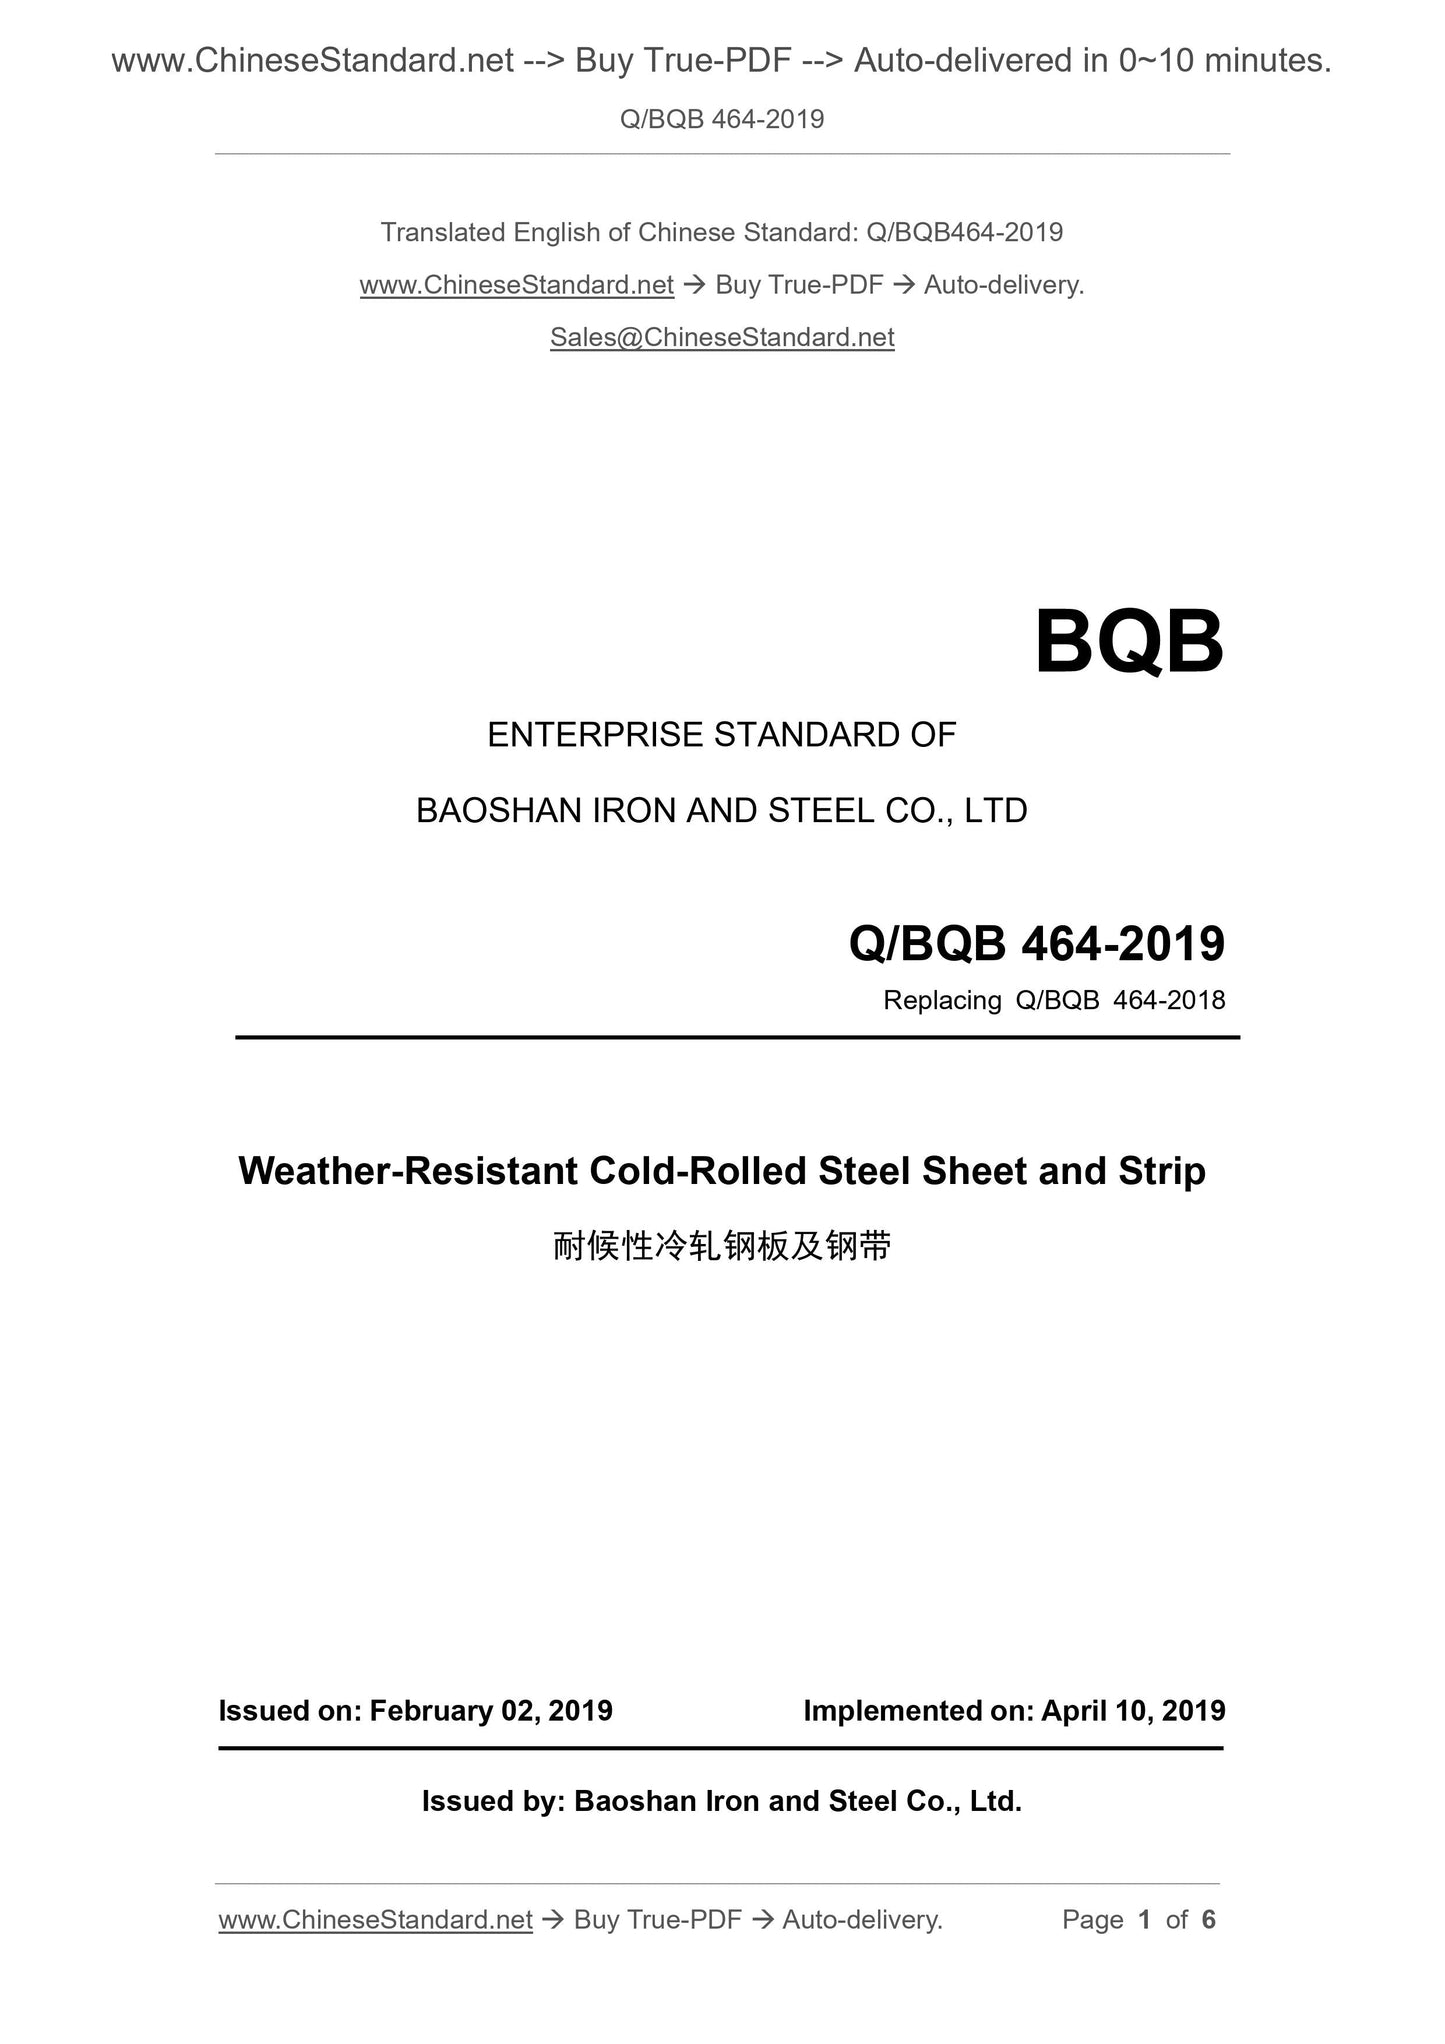 Q/BQB 464-2019 Page 1